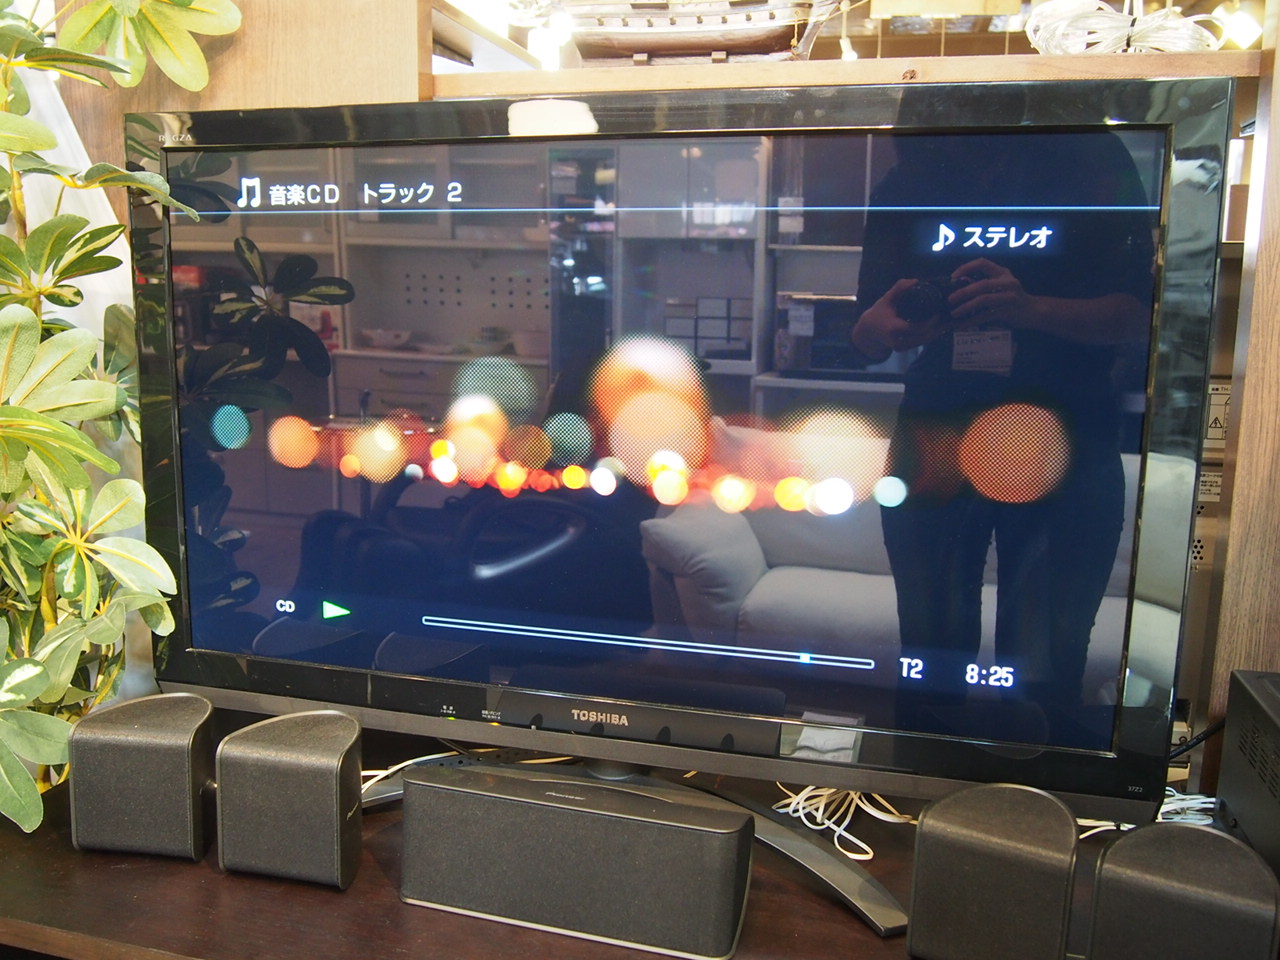 東芝 TOSHIBA REGZA レグザ 37型液晶テレビ 37Z2 レグザエンジンCEVO USBハードディスク録画対応 2011年製 買取